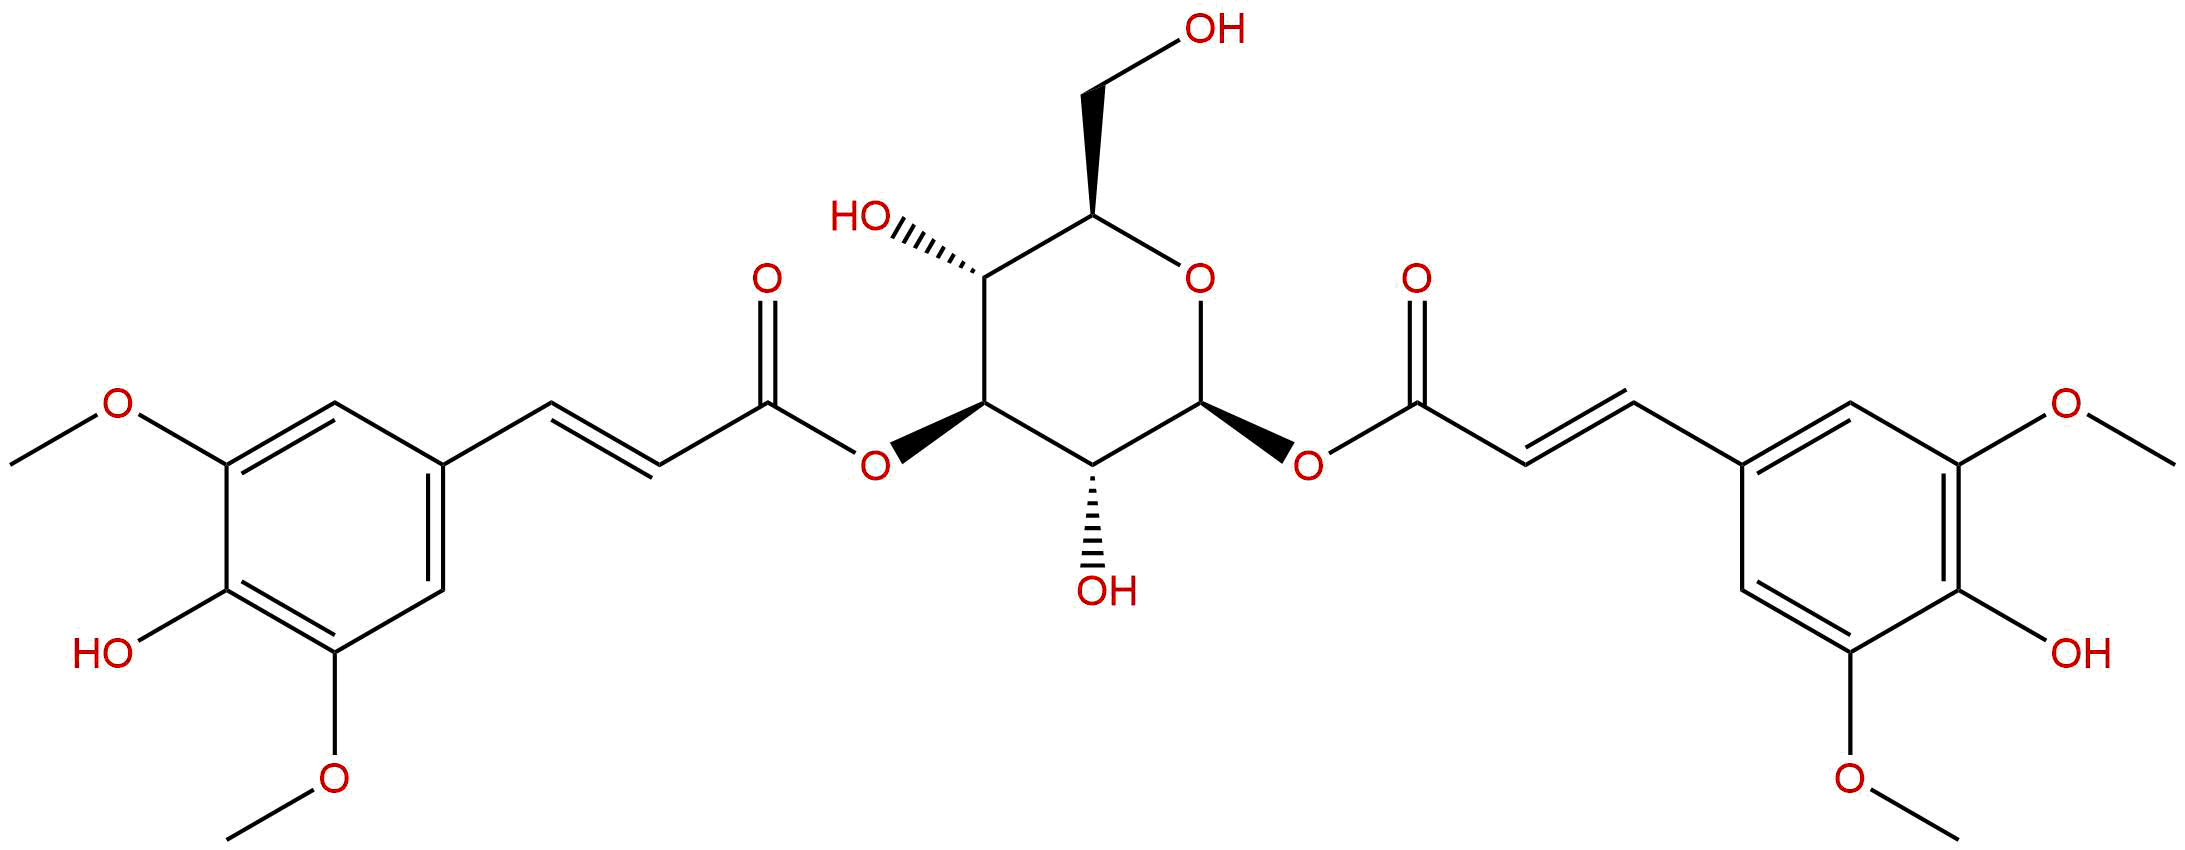 1,3-Disinapoylglucose